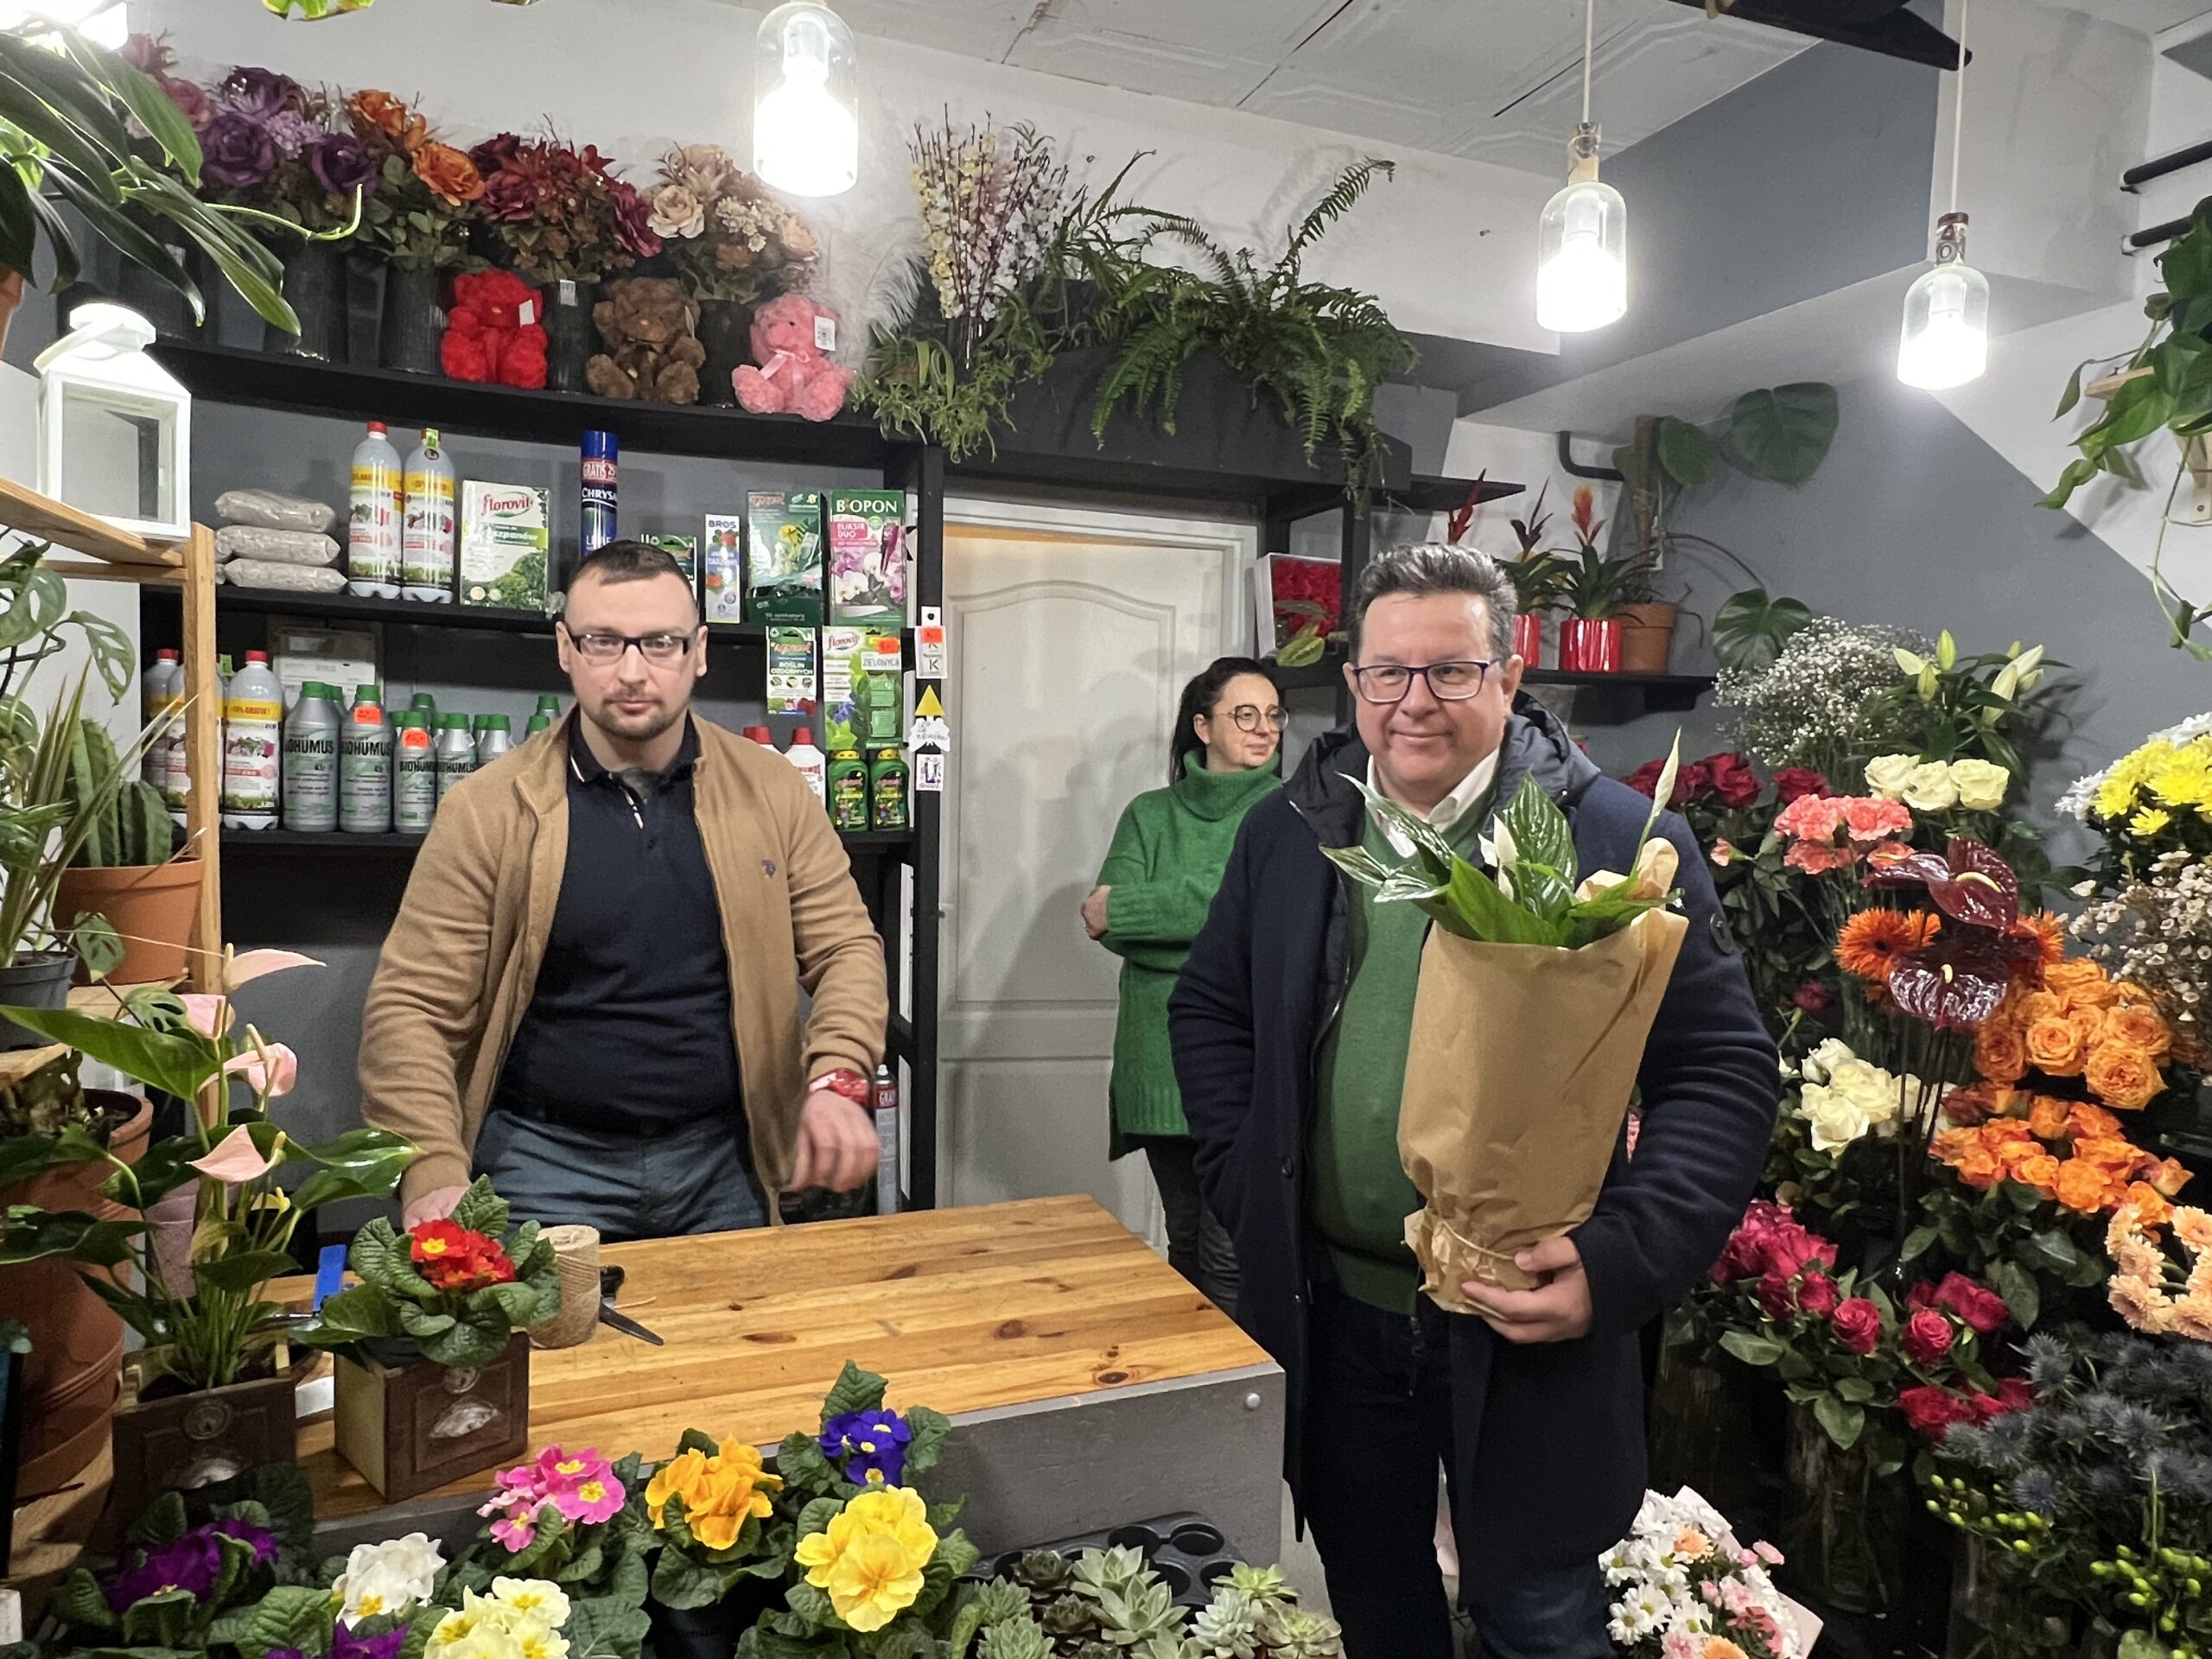 Powiatowy Urząd Pracy w Łodzi przyznał dofinansowanie za założenie kwiaciarni